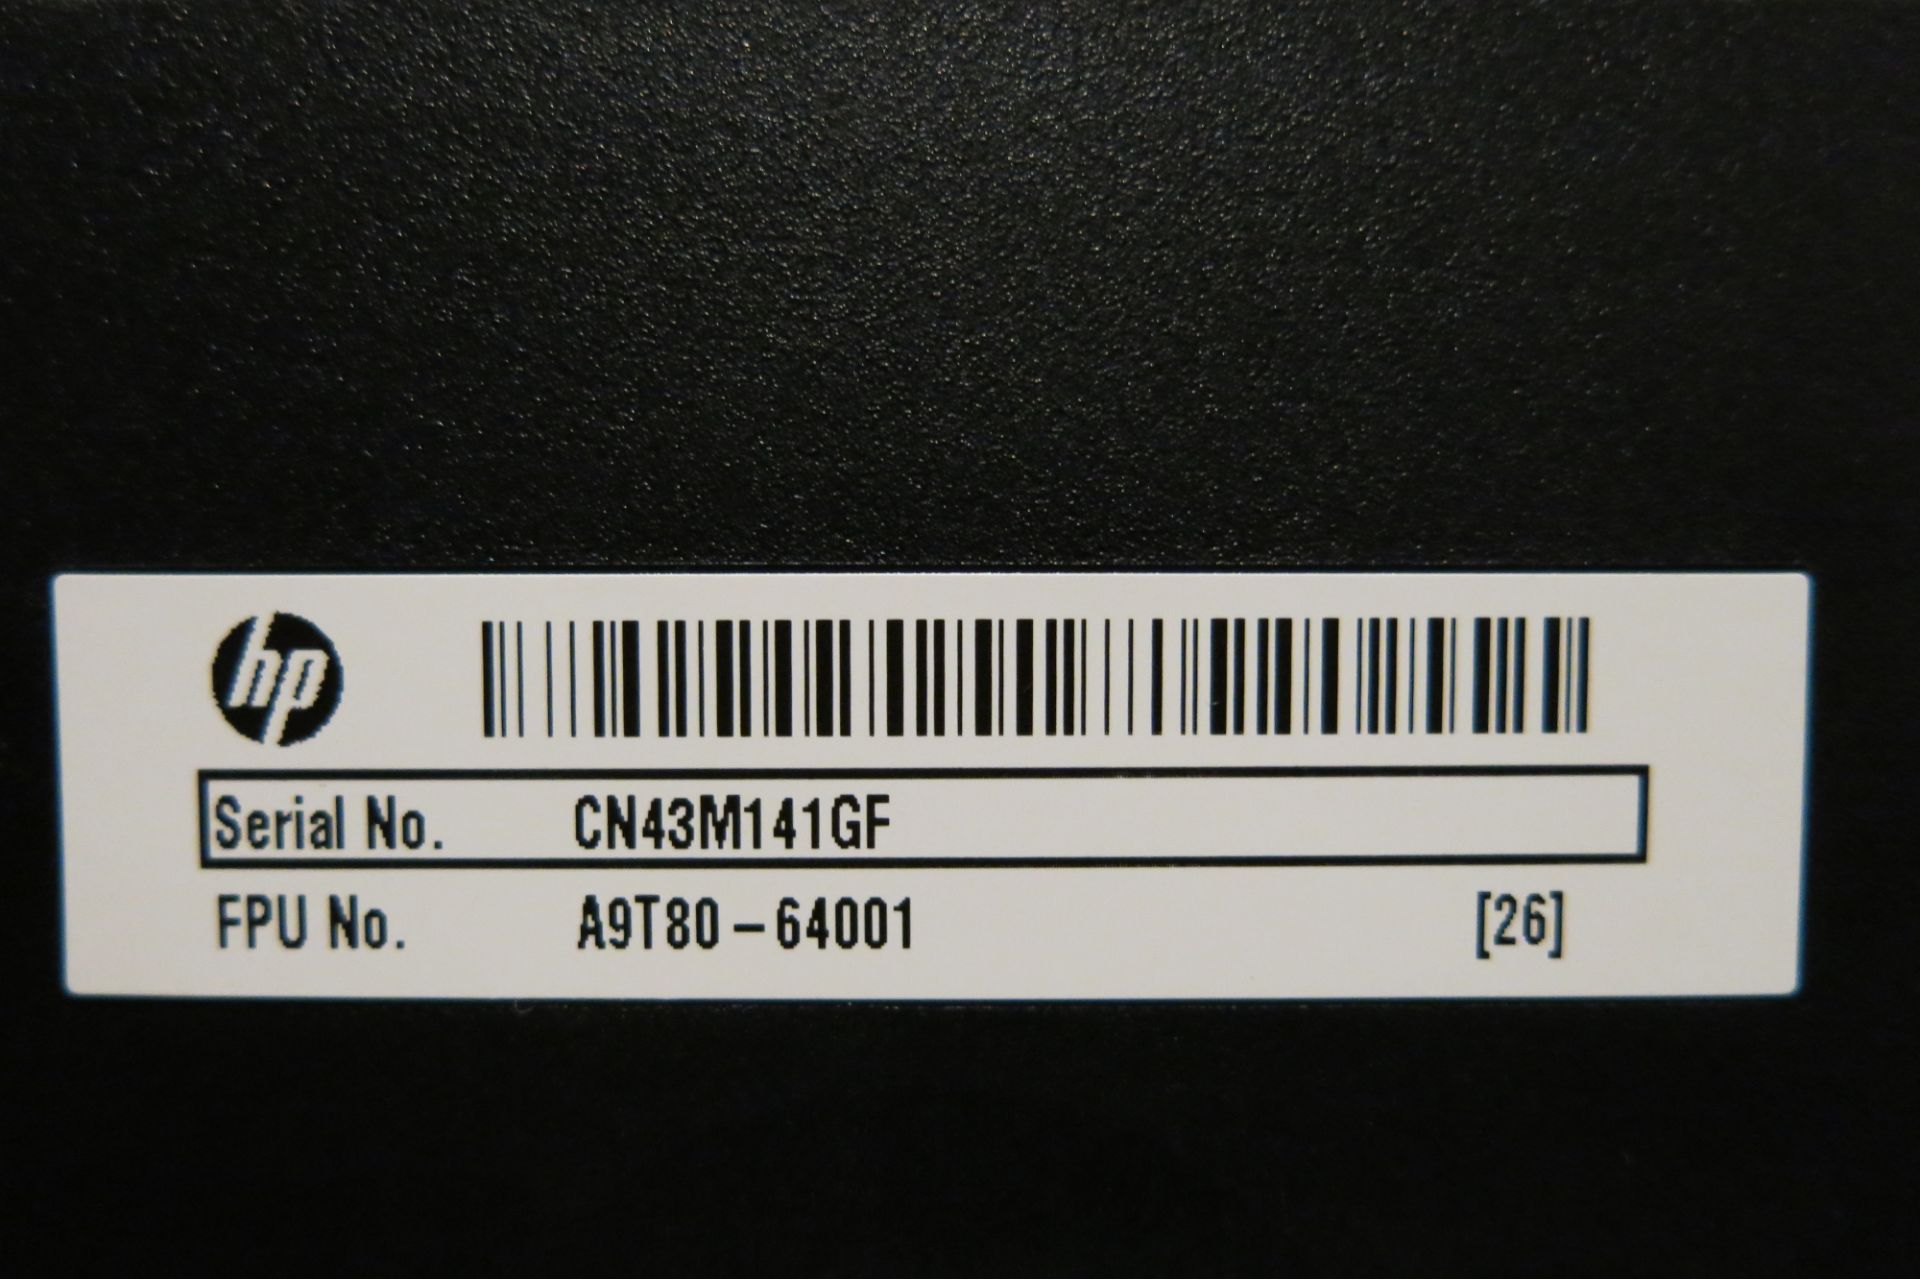 HP, ENVY 4500, MULTI-FUNCTIONAL PRINTER, S/N CN43M141GF - Image 2 of 2